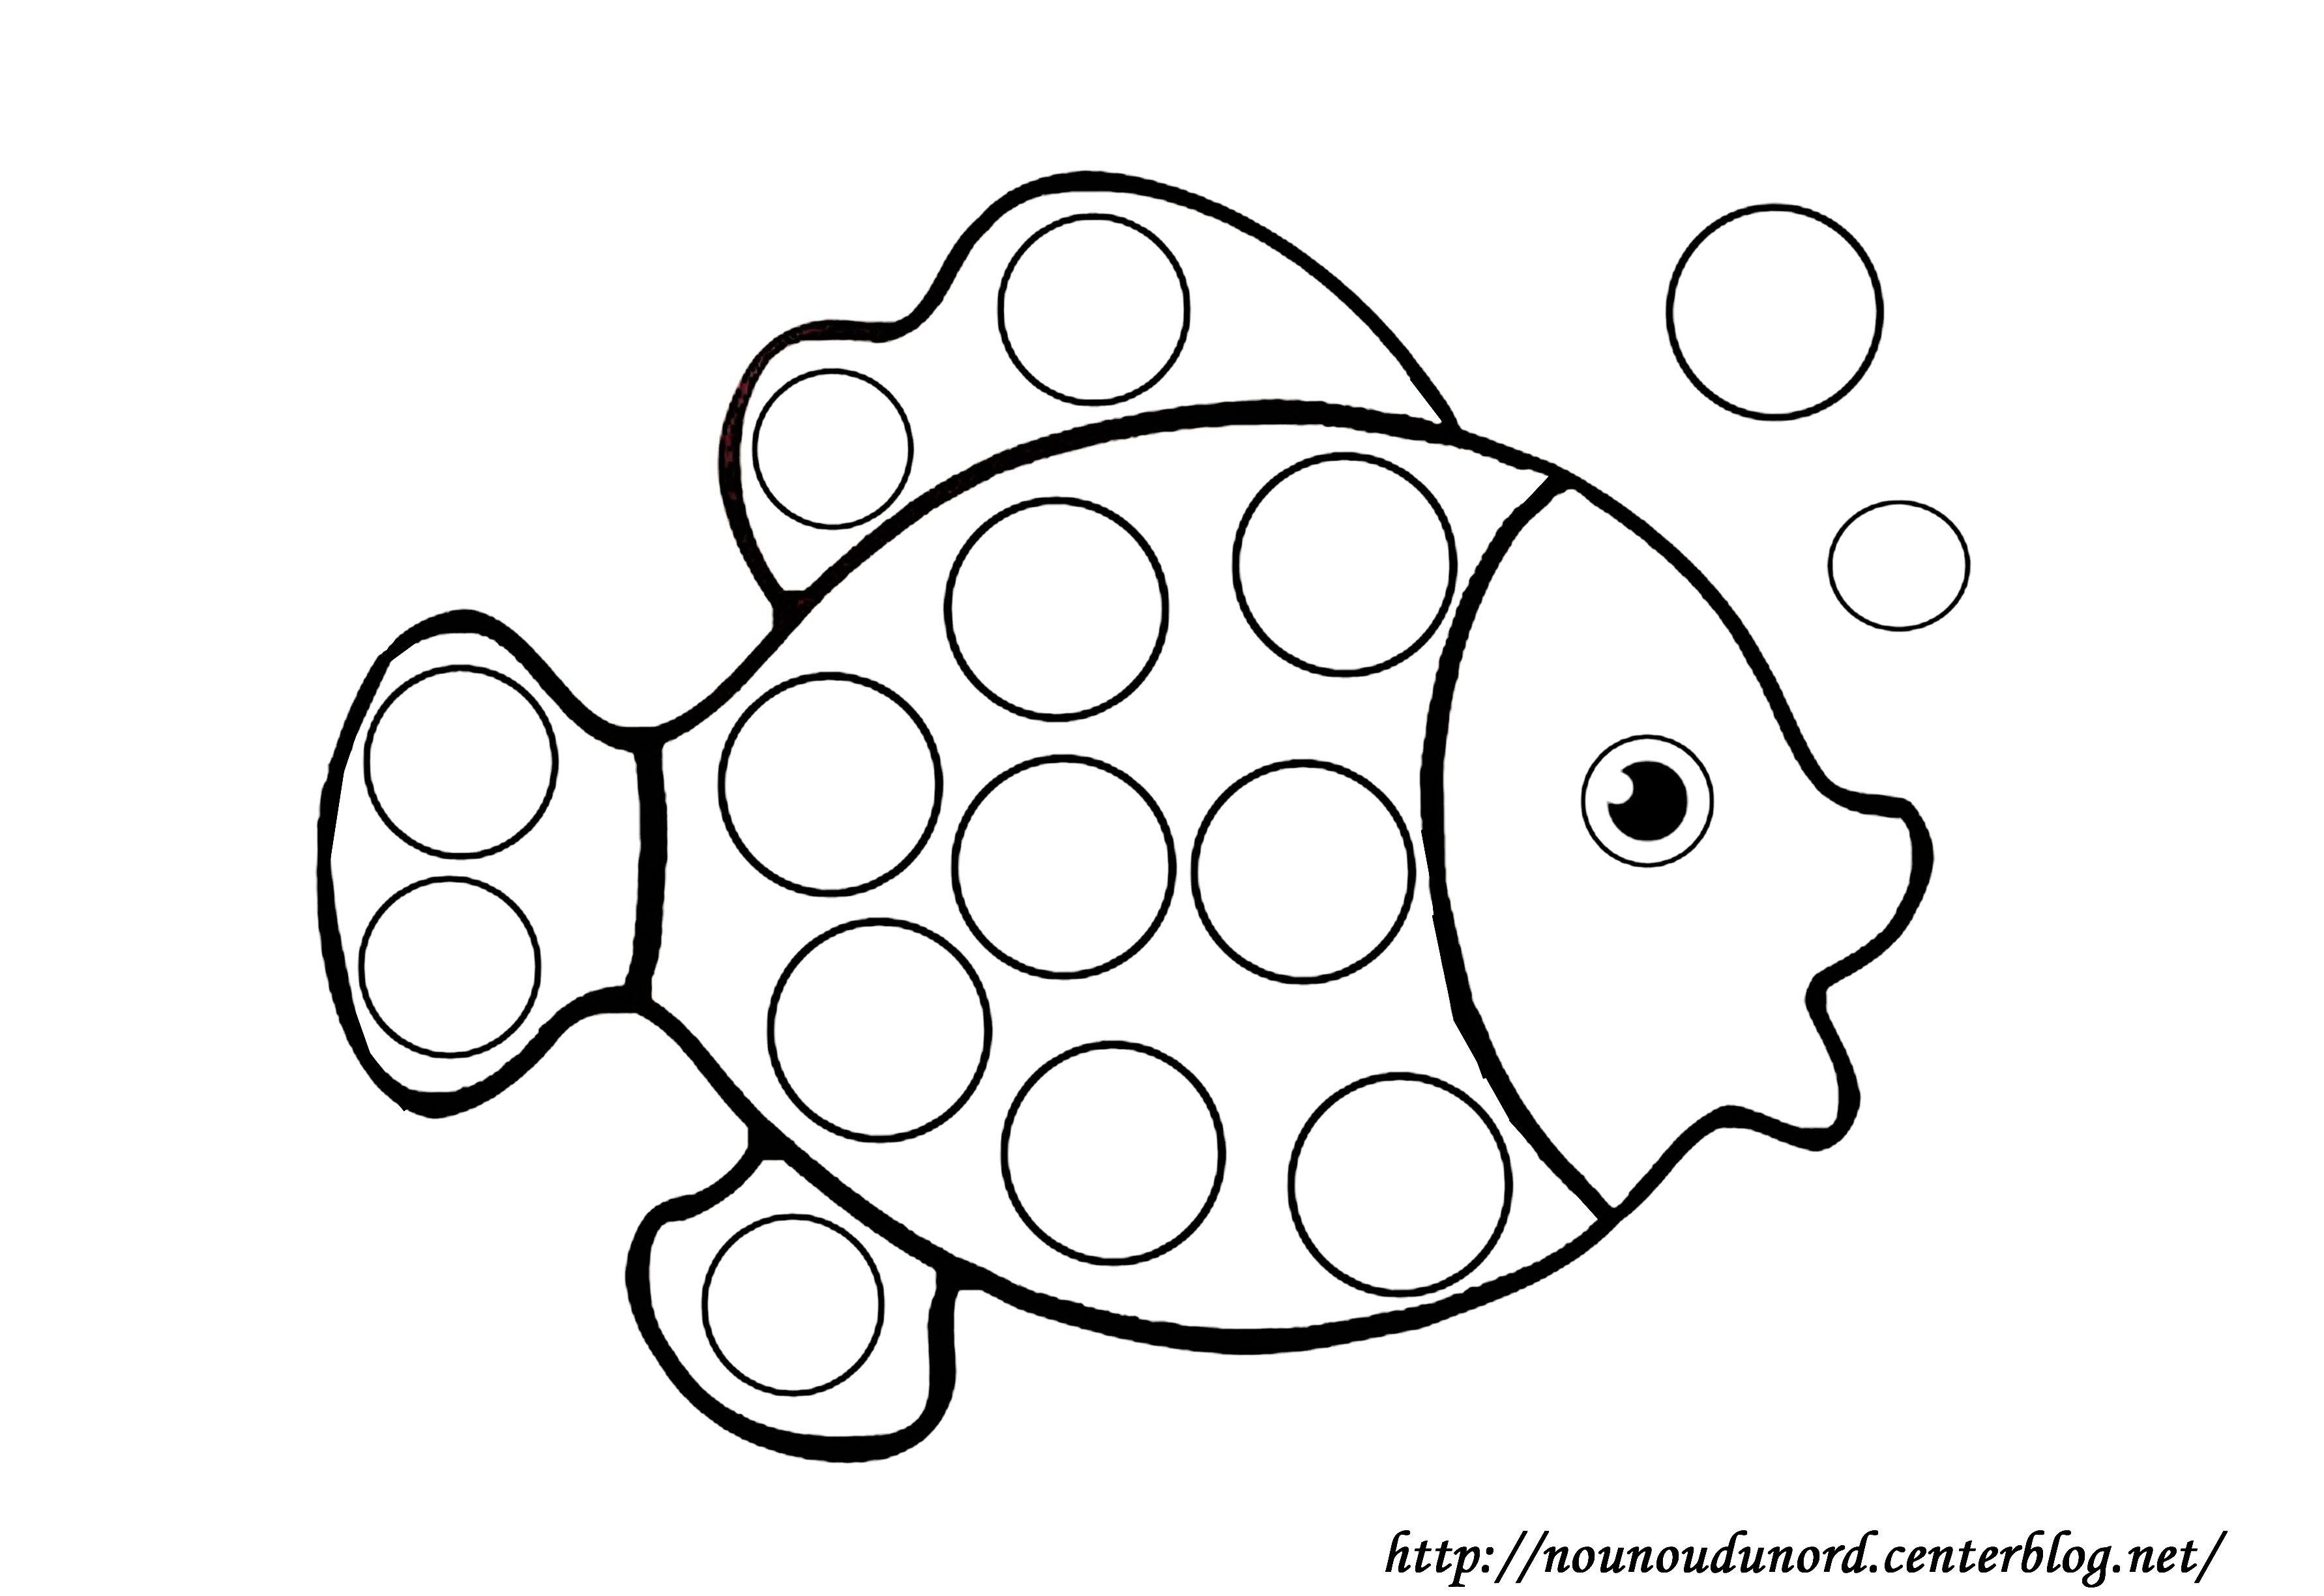 Image de poisson a colorier